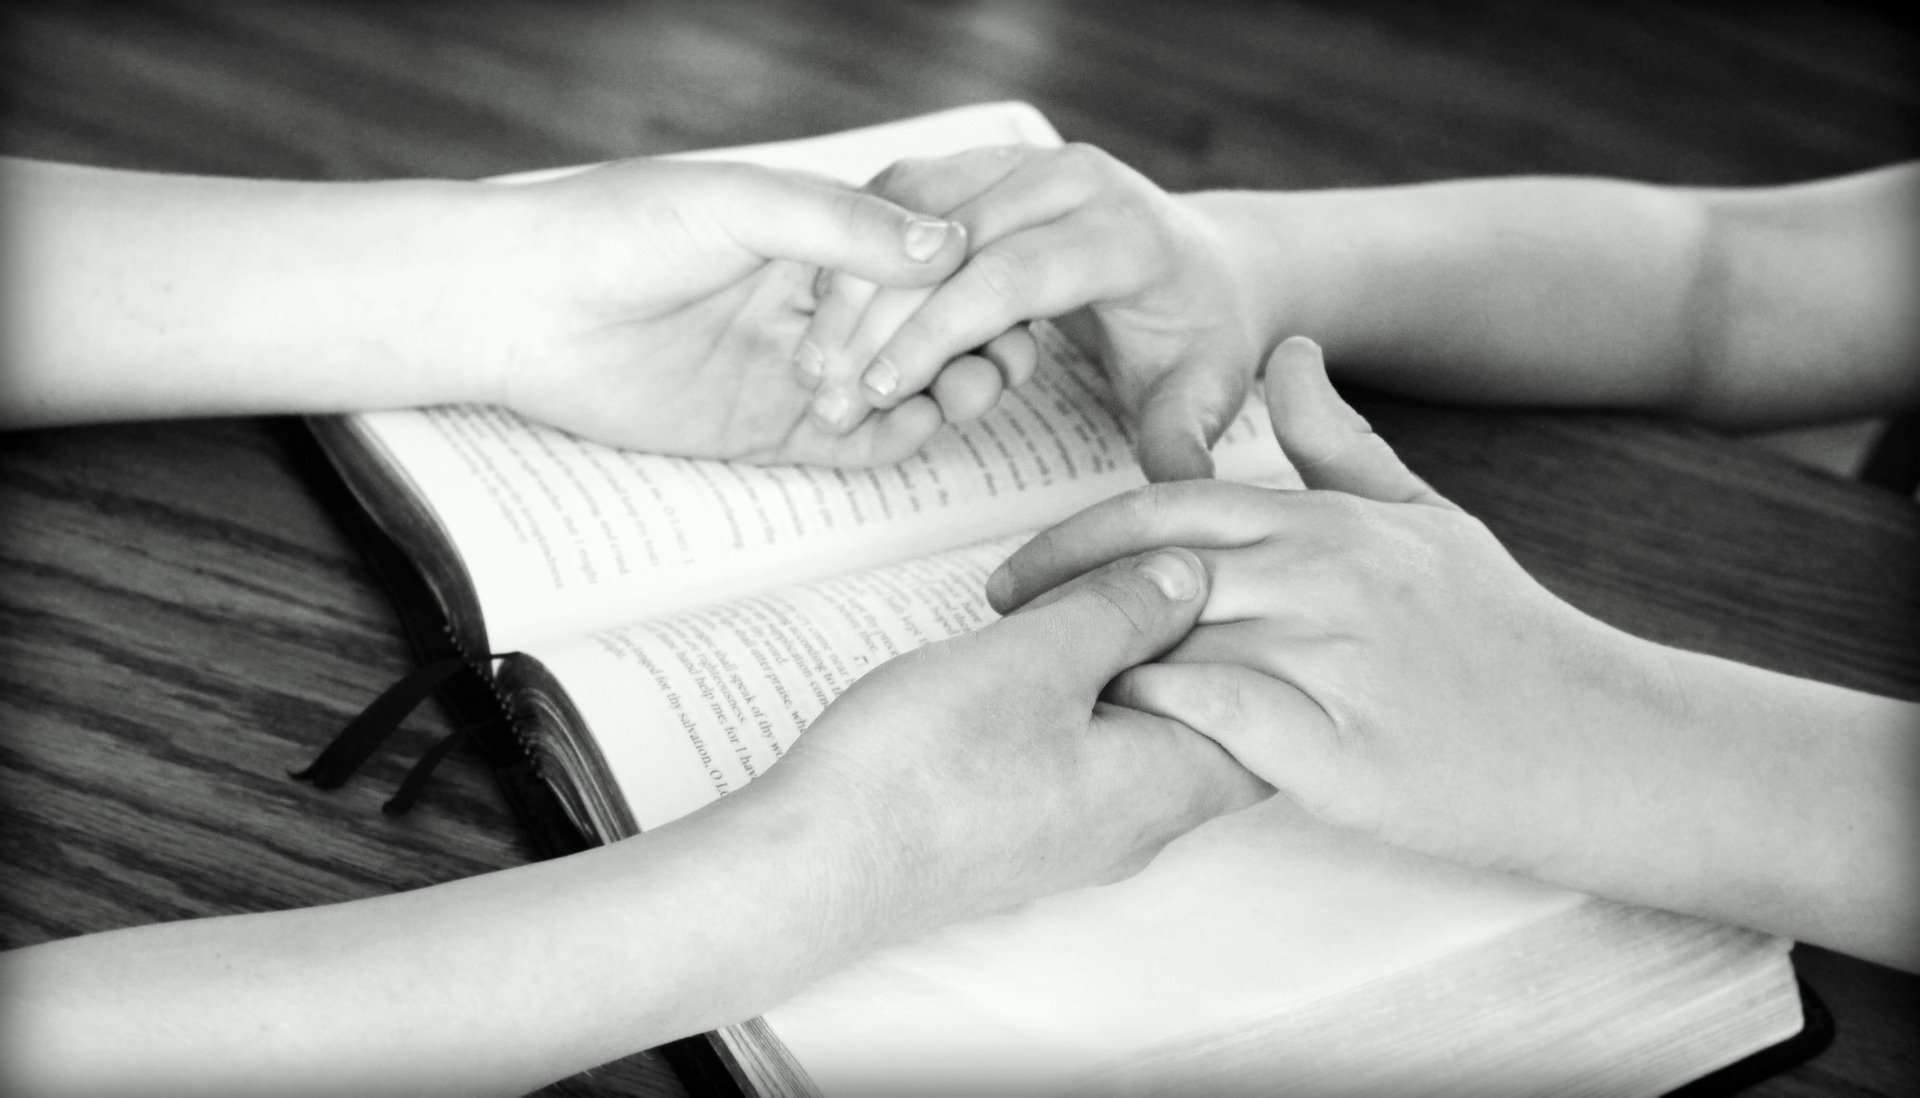 Trzymające się ręce ojca i dziecka położone na Biblii